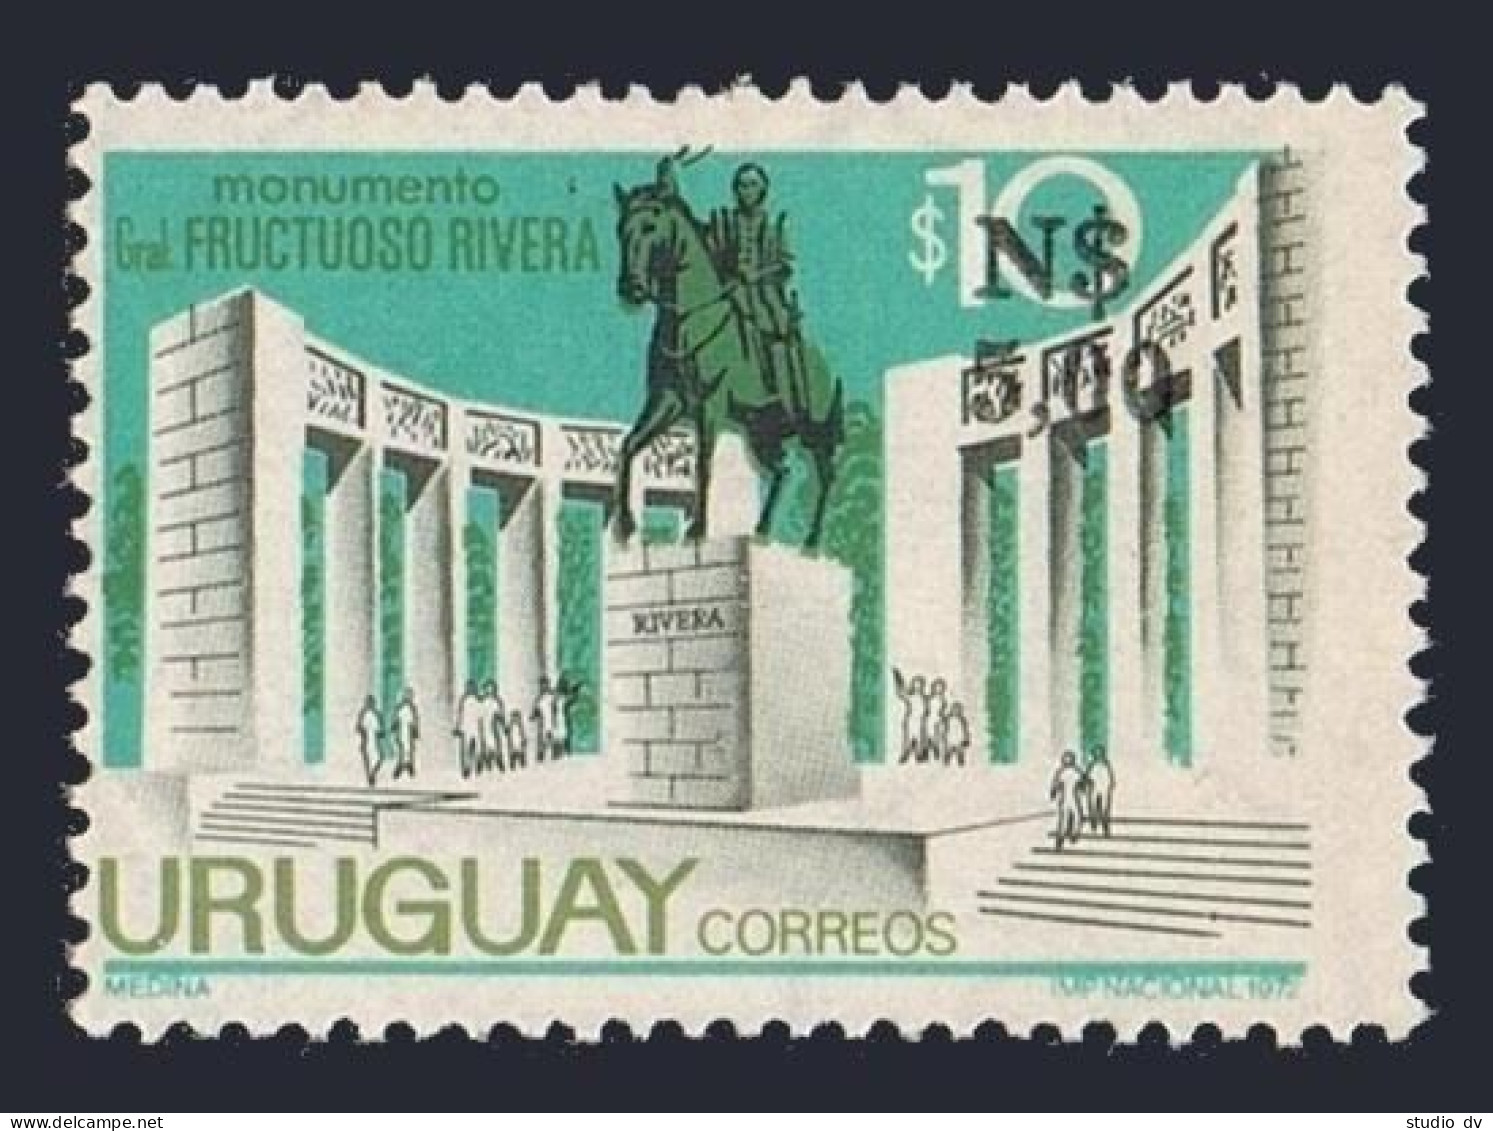 Uruguay 945, MNH. Michel 1415. General Frustuoso Rivera Statue, 1976. - Uruguay